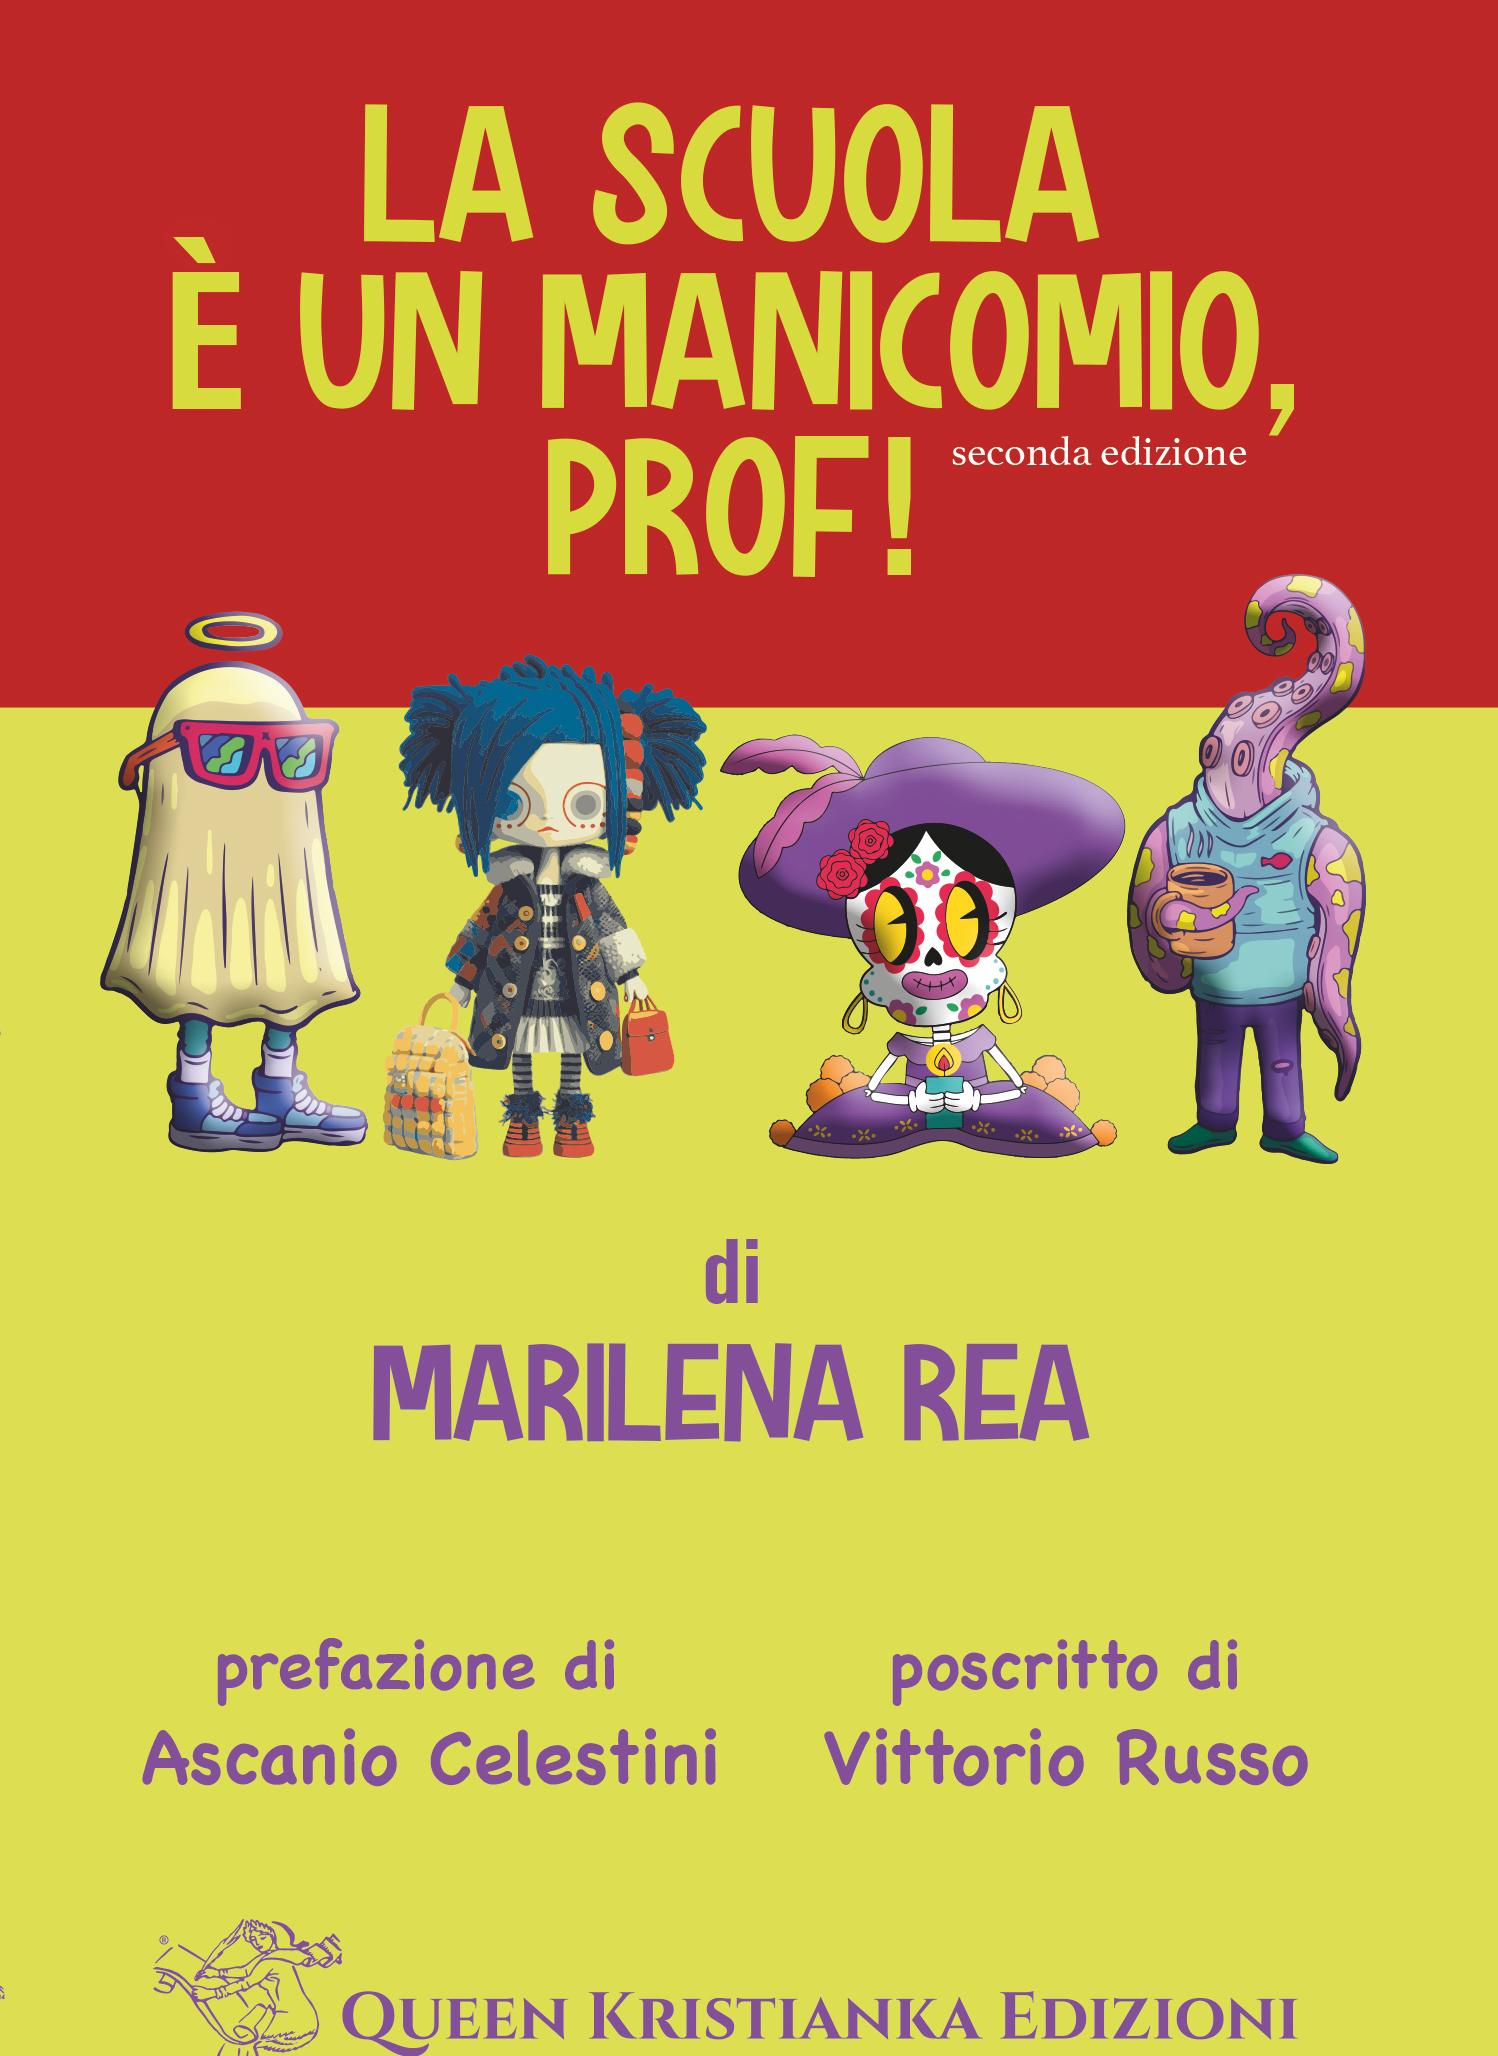 La scuola è un manicomio, prof! di Marilena Rea (II edizione)